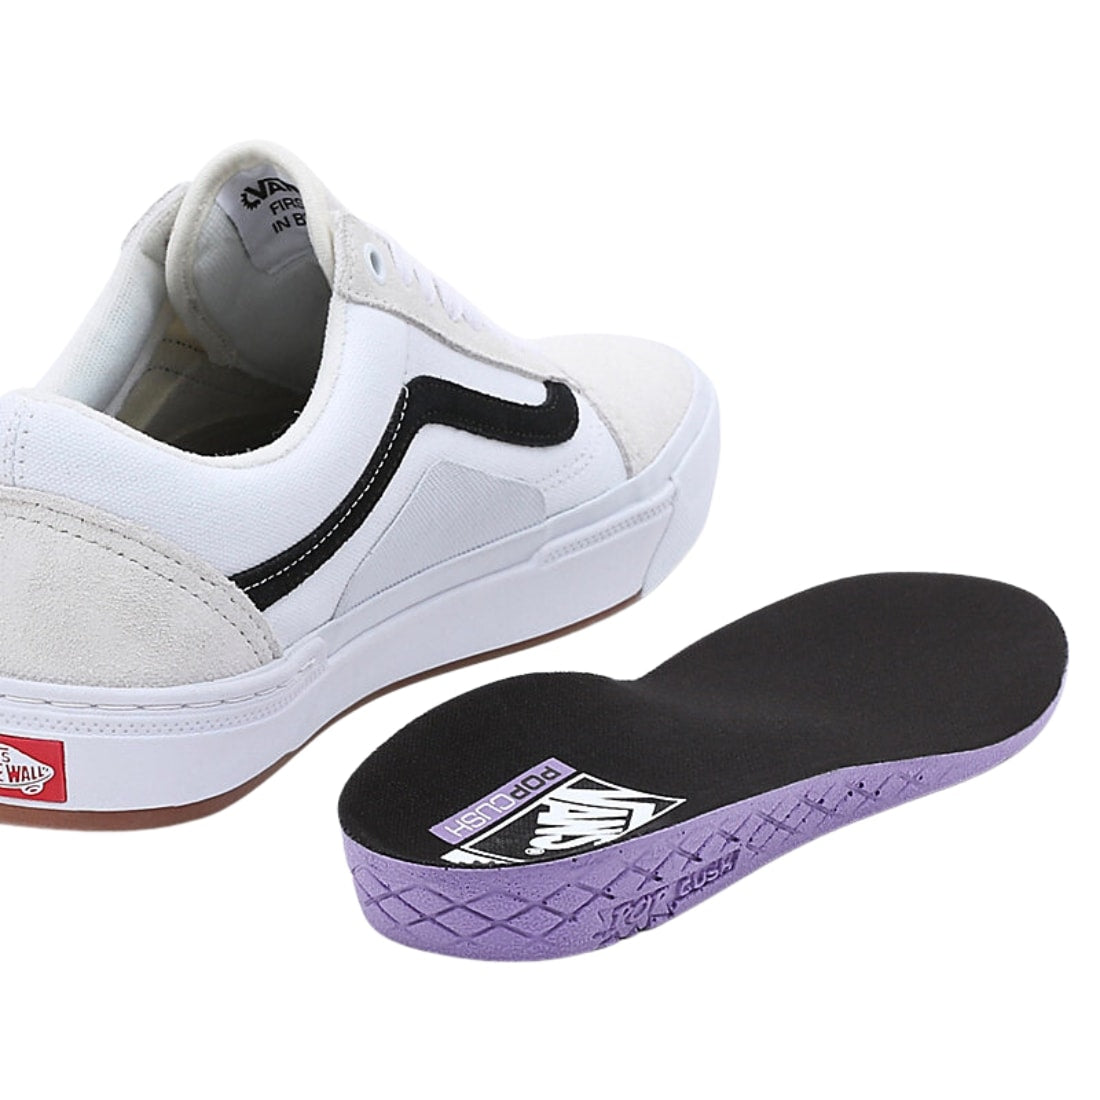 Vans BMX Old Skool Skate Shoes - Marshmallow/White